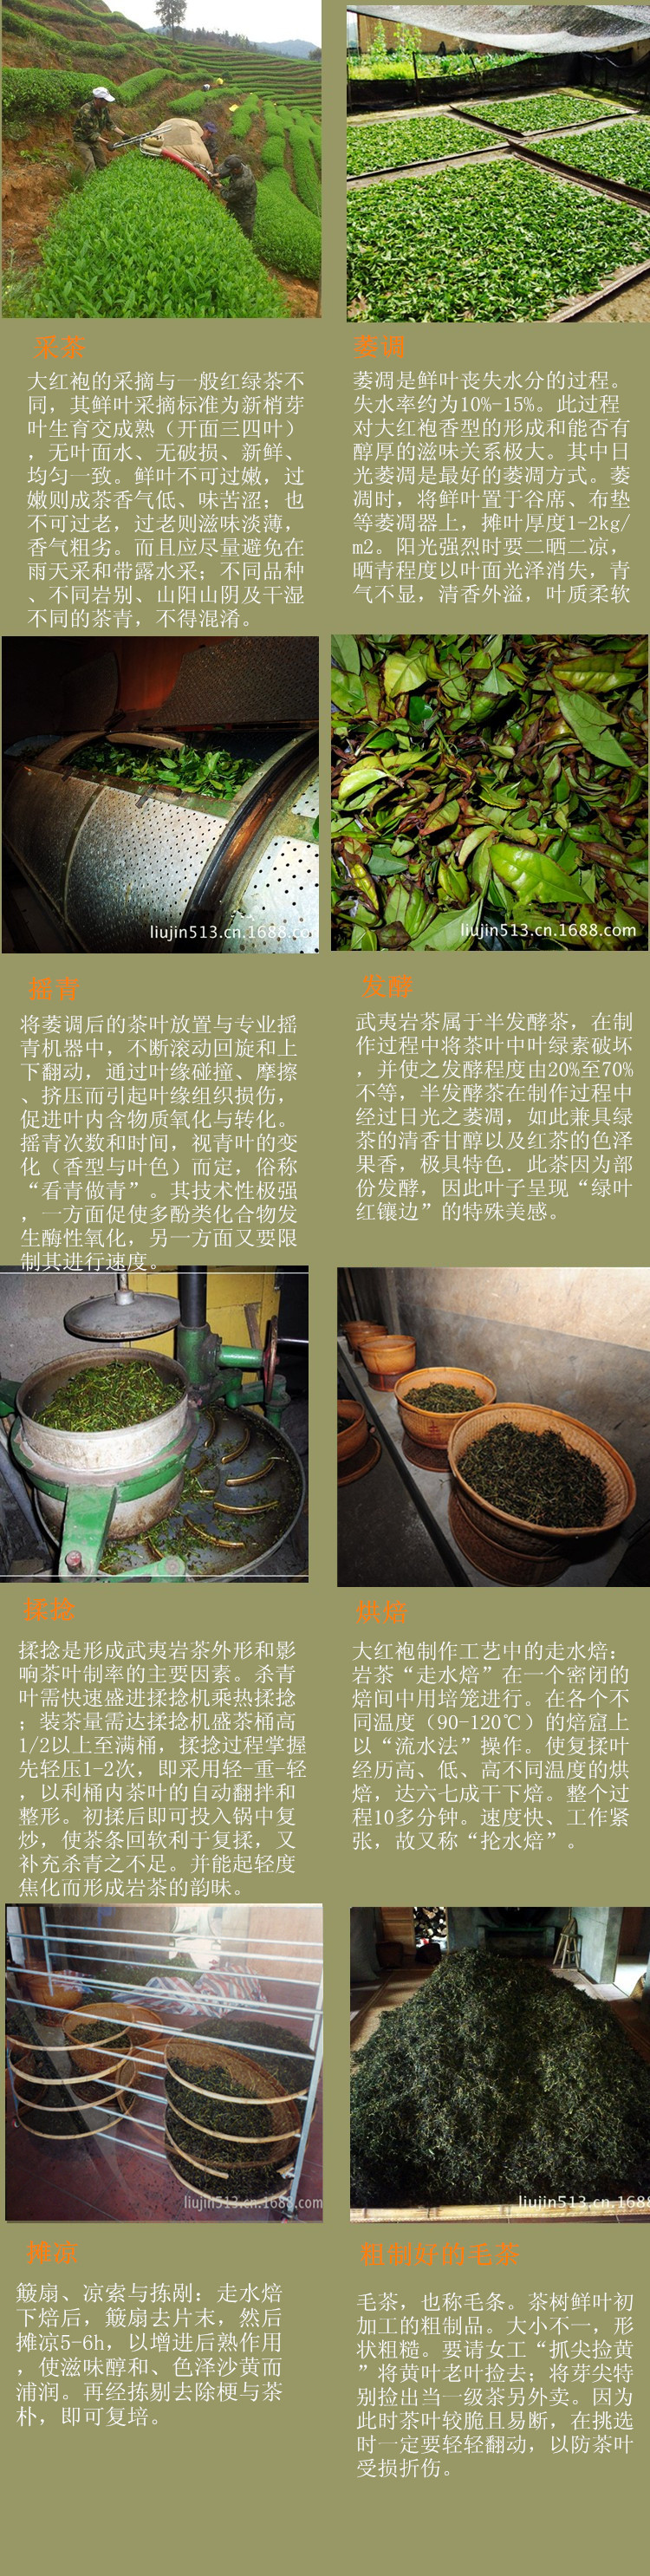 产品中心 乌龙茶/青茶 